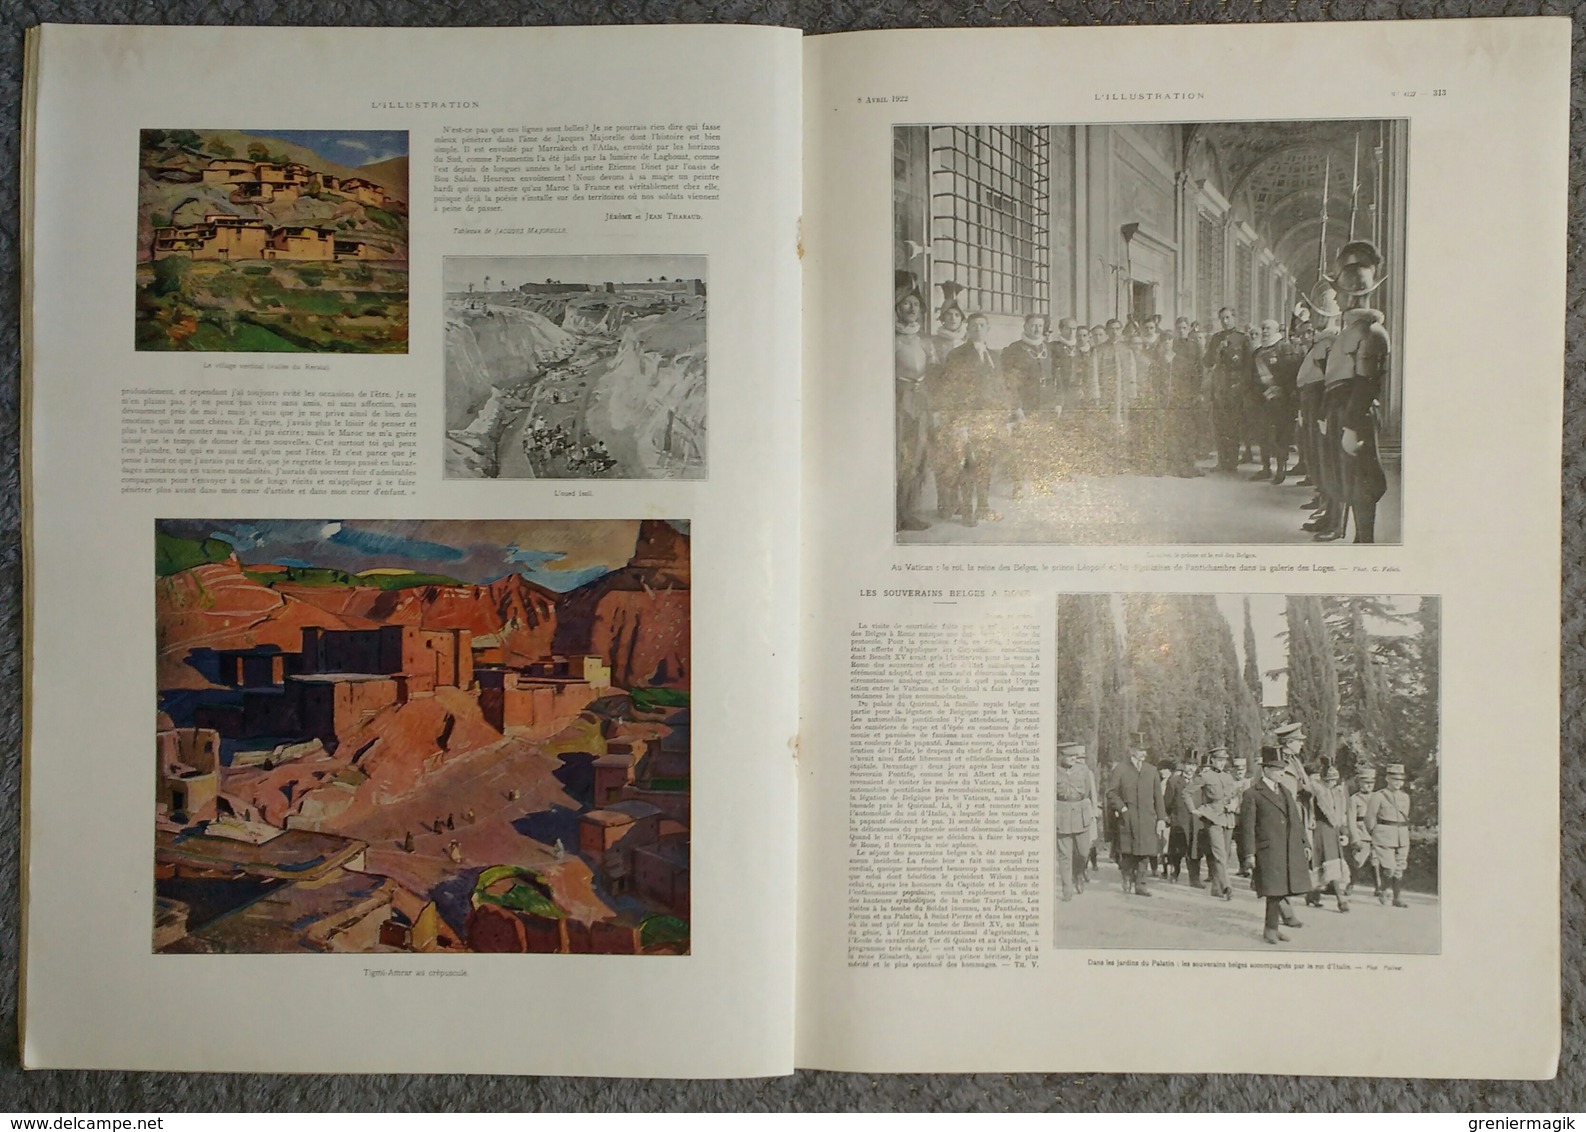 L'Illustration 4127 8 avril 1922 Einstein au collège de France/Toulouse Lautrec/Majorelle au Maroc/Auguste Brouet/Gènes